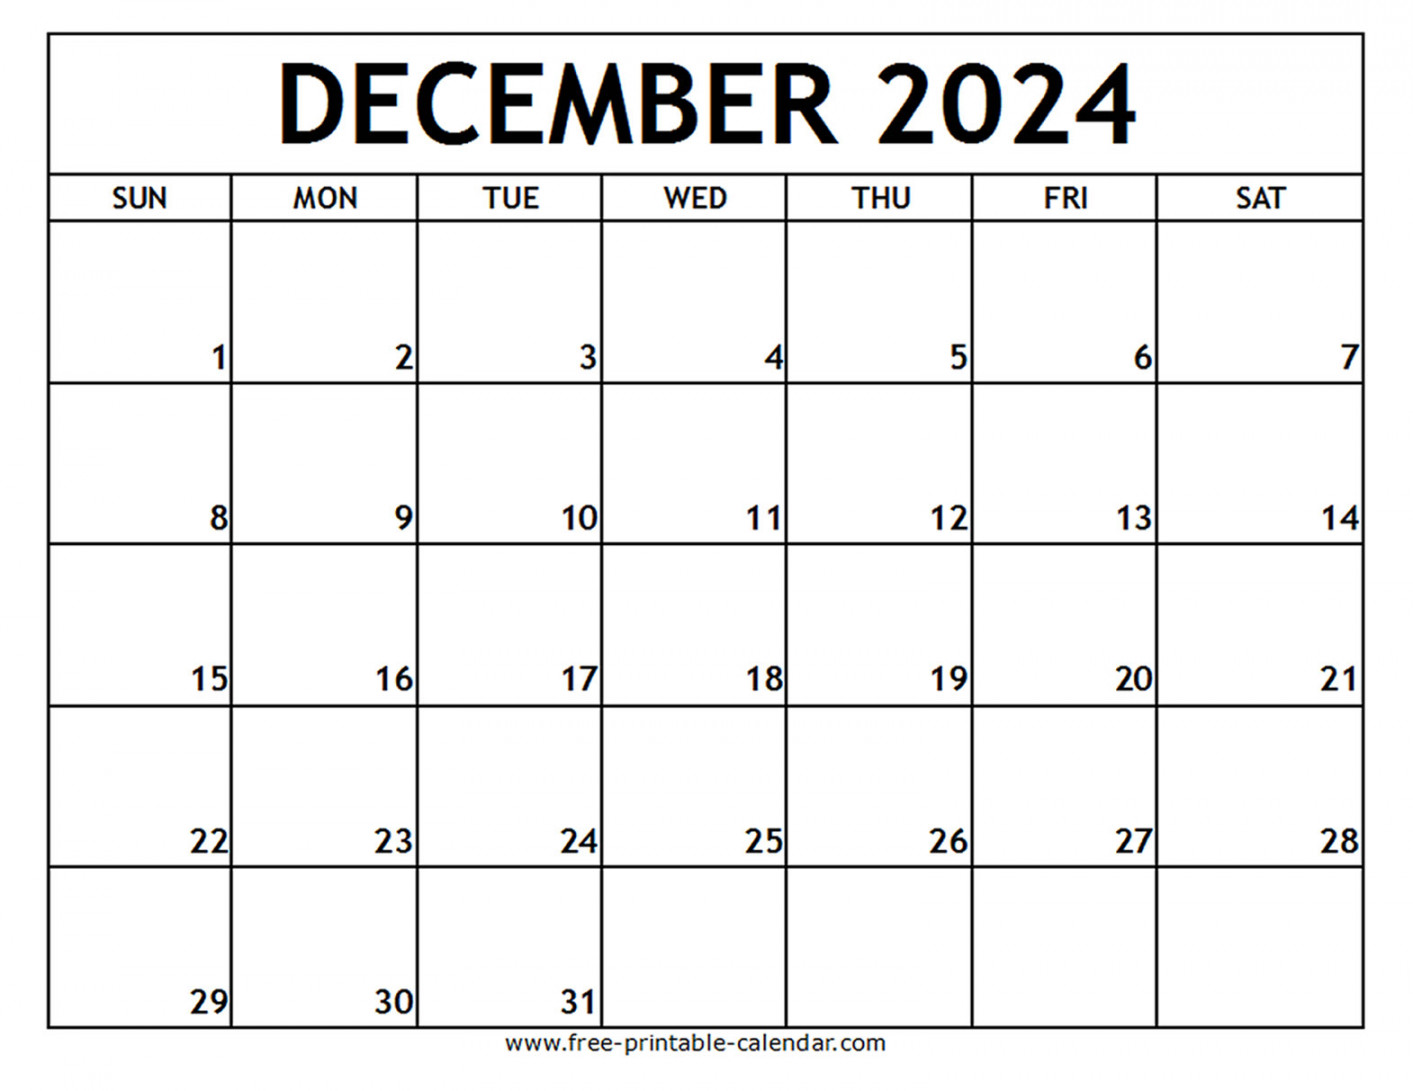 december printable calendar free printable calendar com